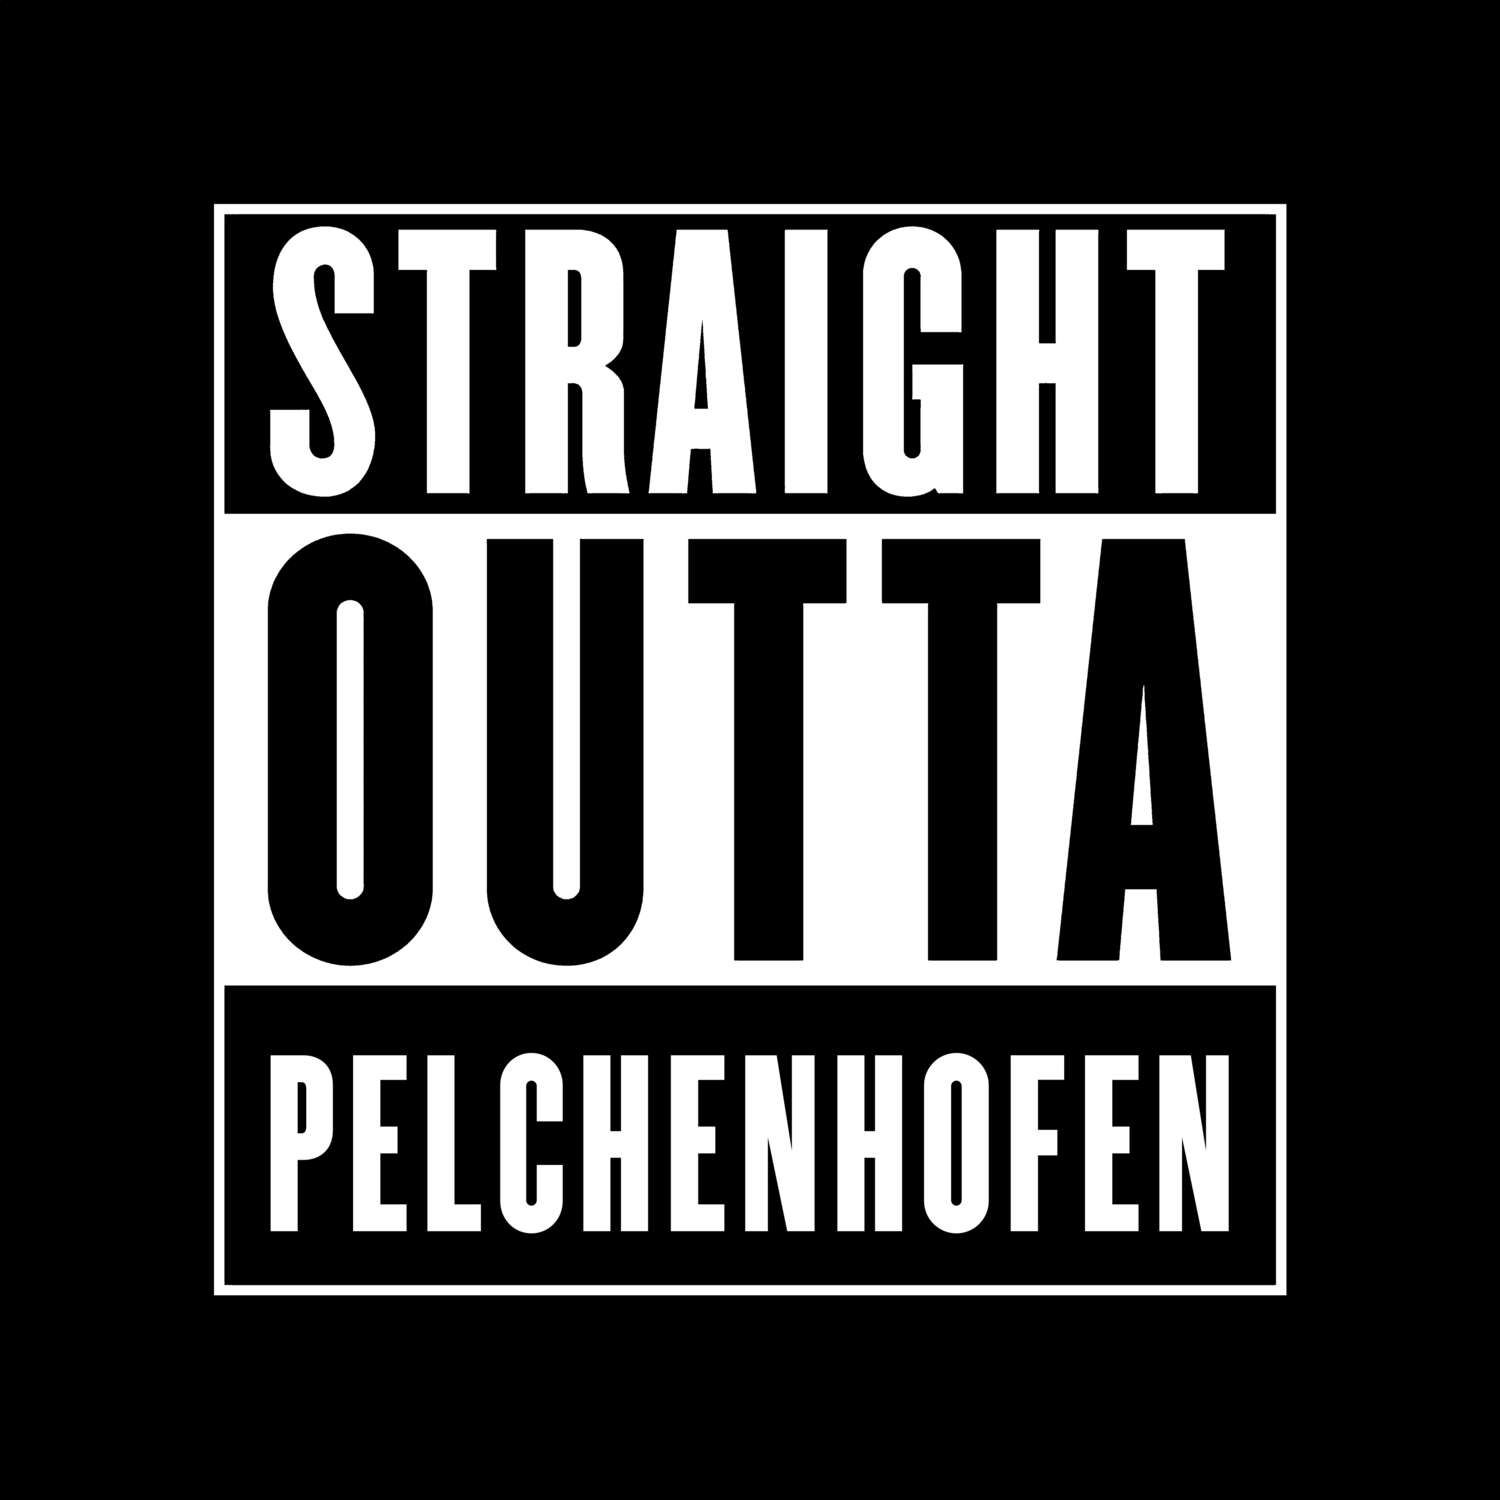 Pelchenhofen T-Shirt »Straight Outta«